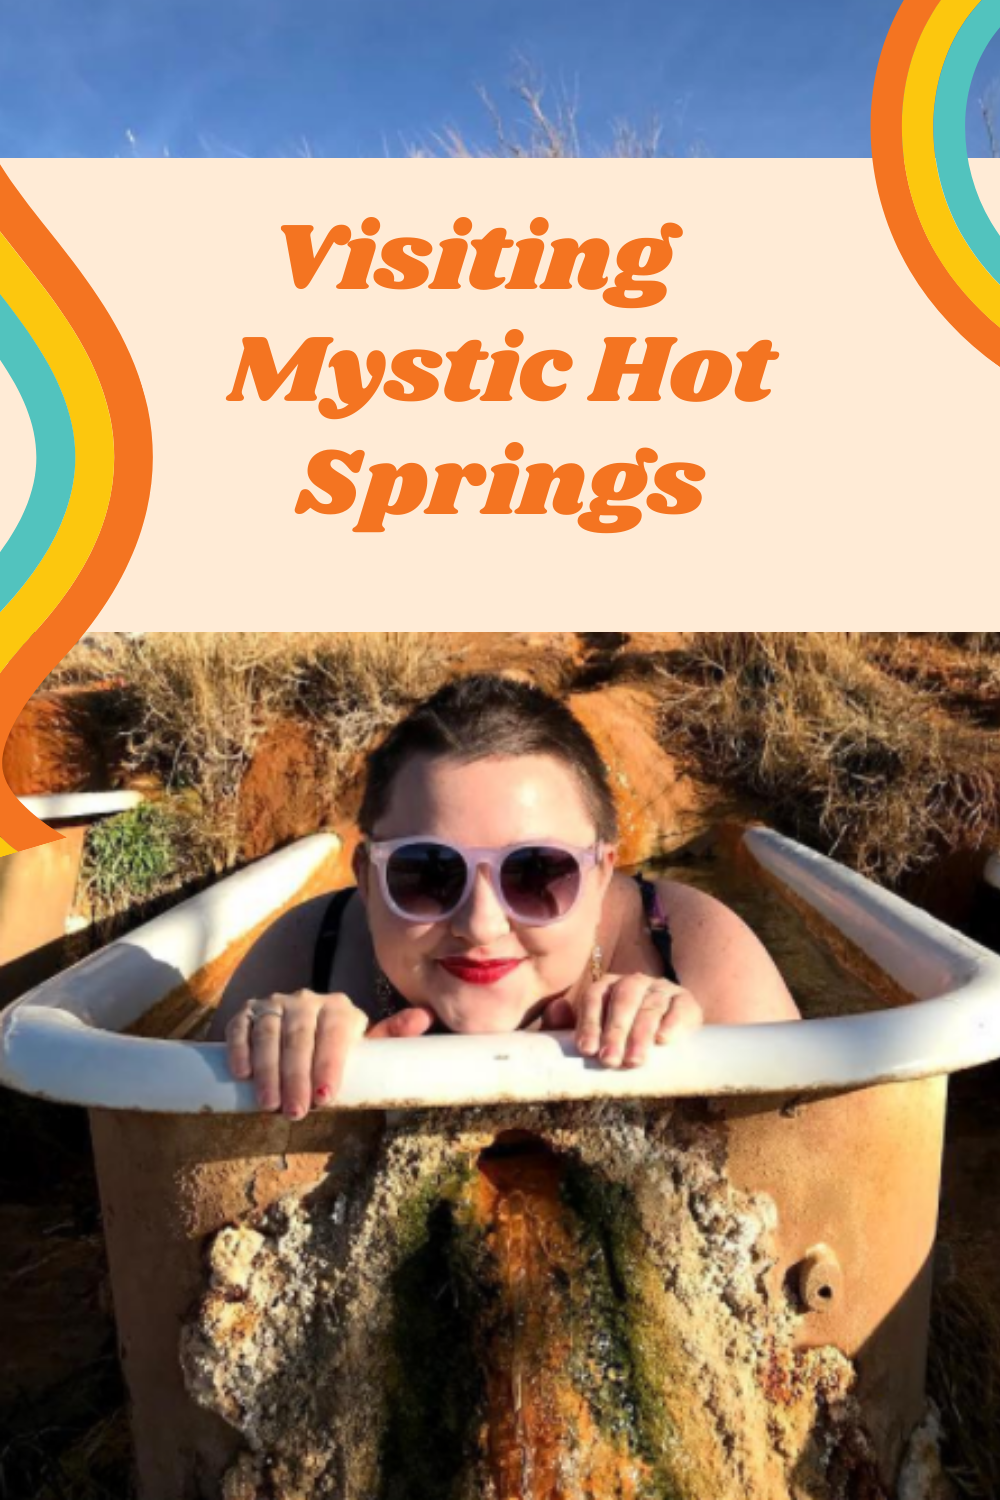 Visiting Mystic Hot Springs - Utah Road Trip!